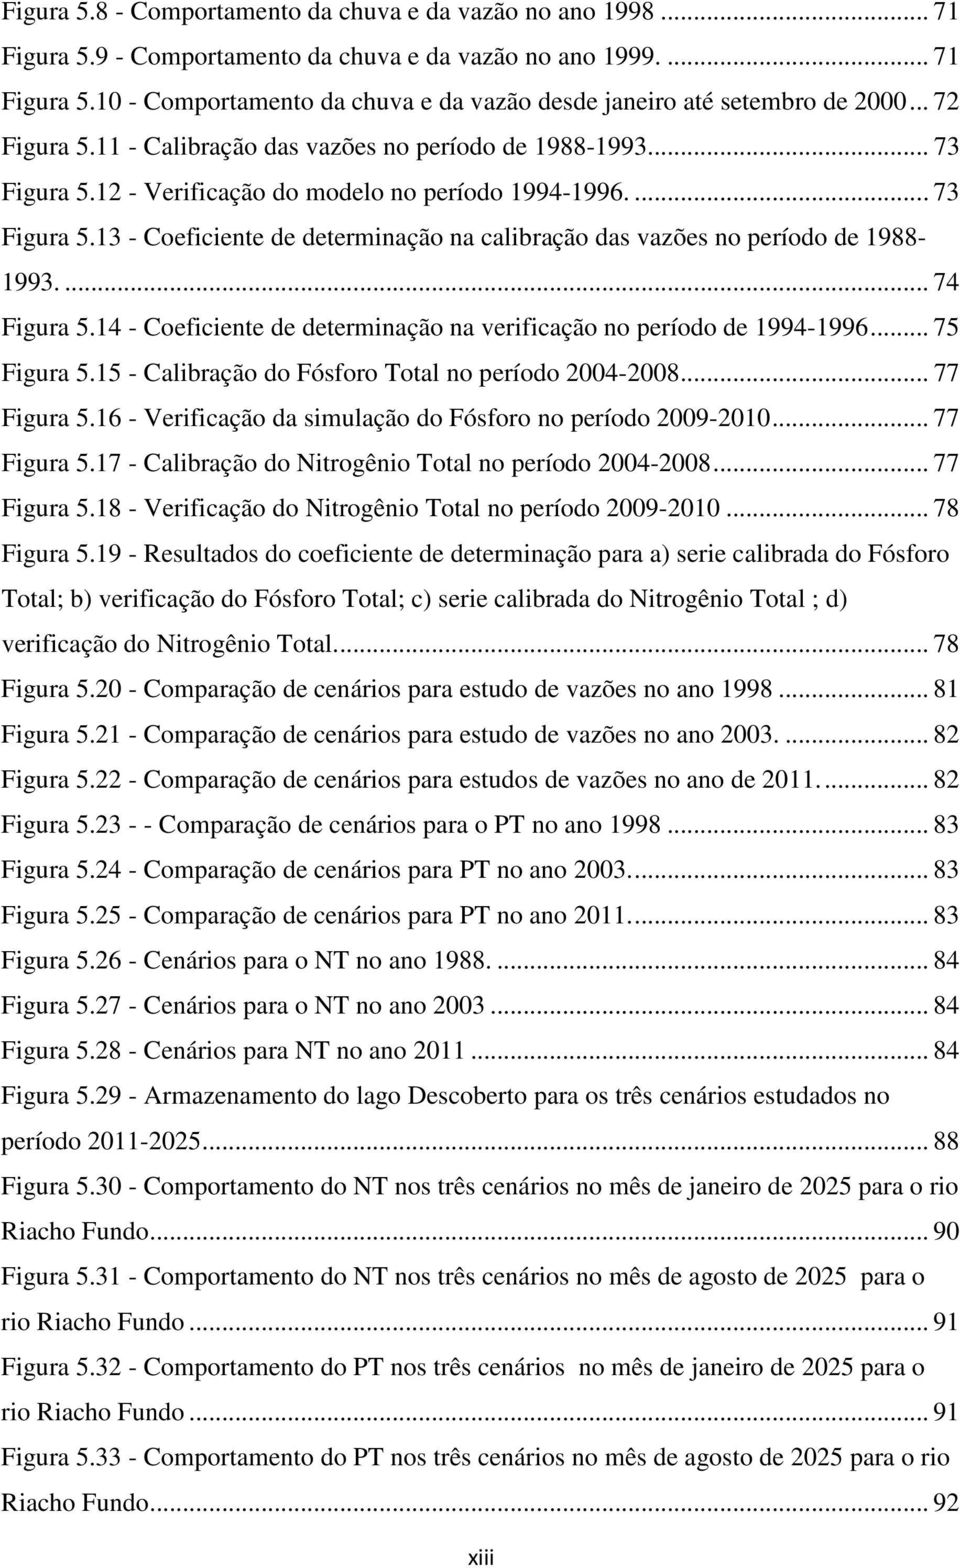 ... 74 Figura 5.14 - Coeficiente de determinação na verificação no período de 1994-1996... 75 Figura 5.15 - Calibração do Fósforo Total no período 2004-2008... 77 Figura 5.